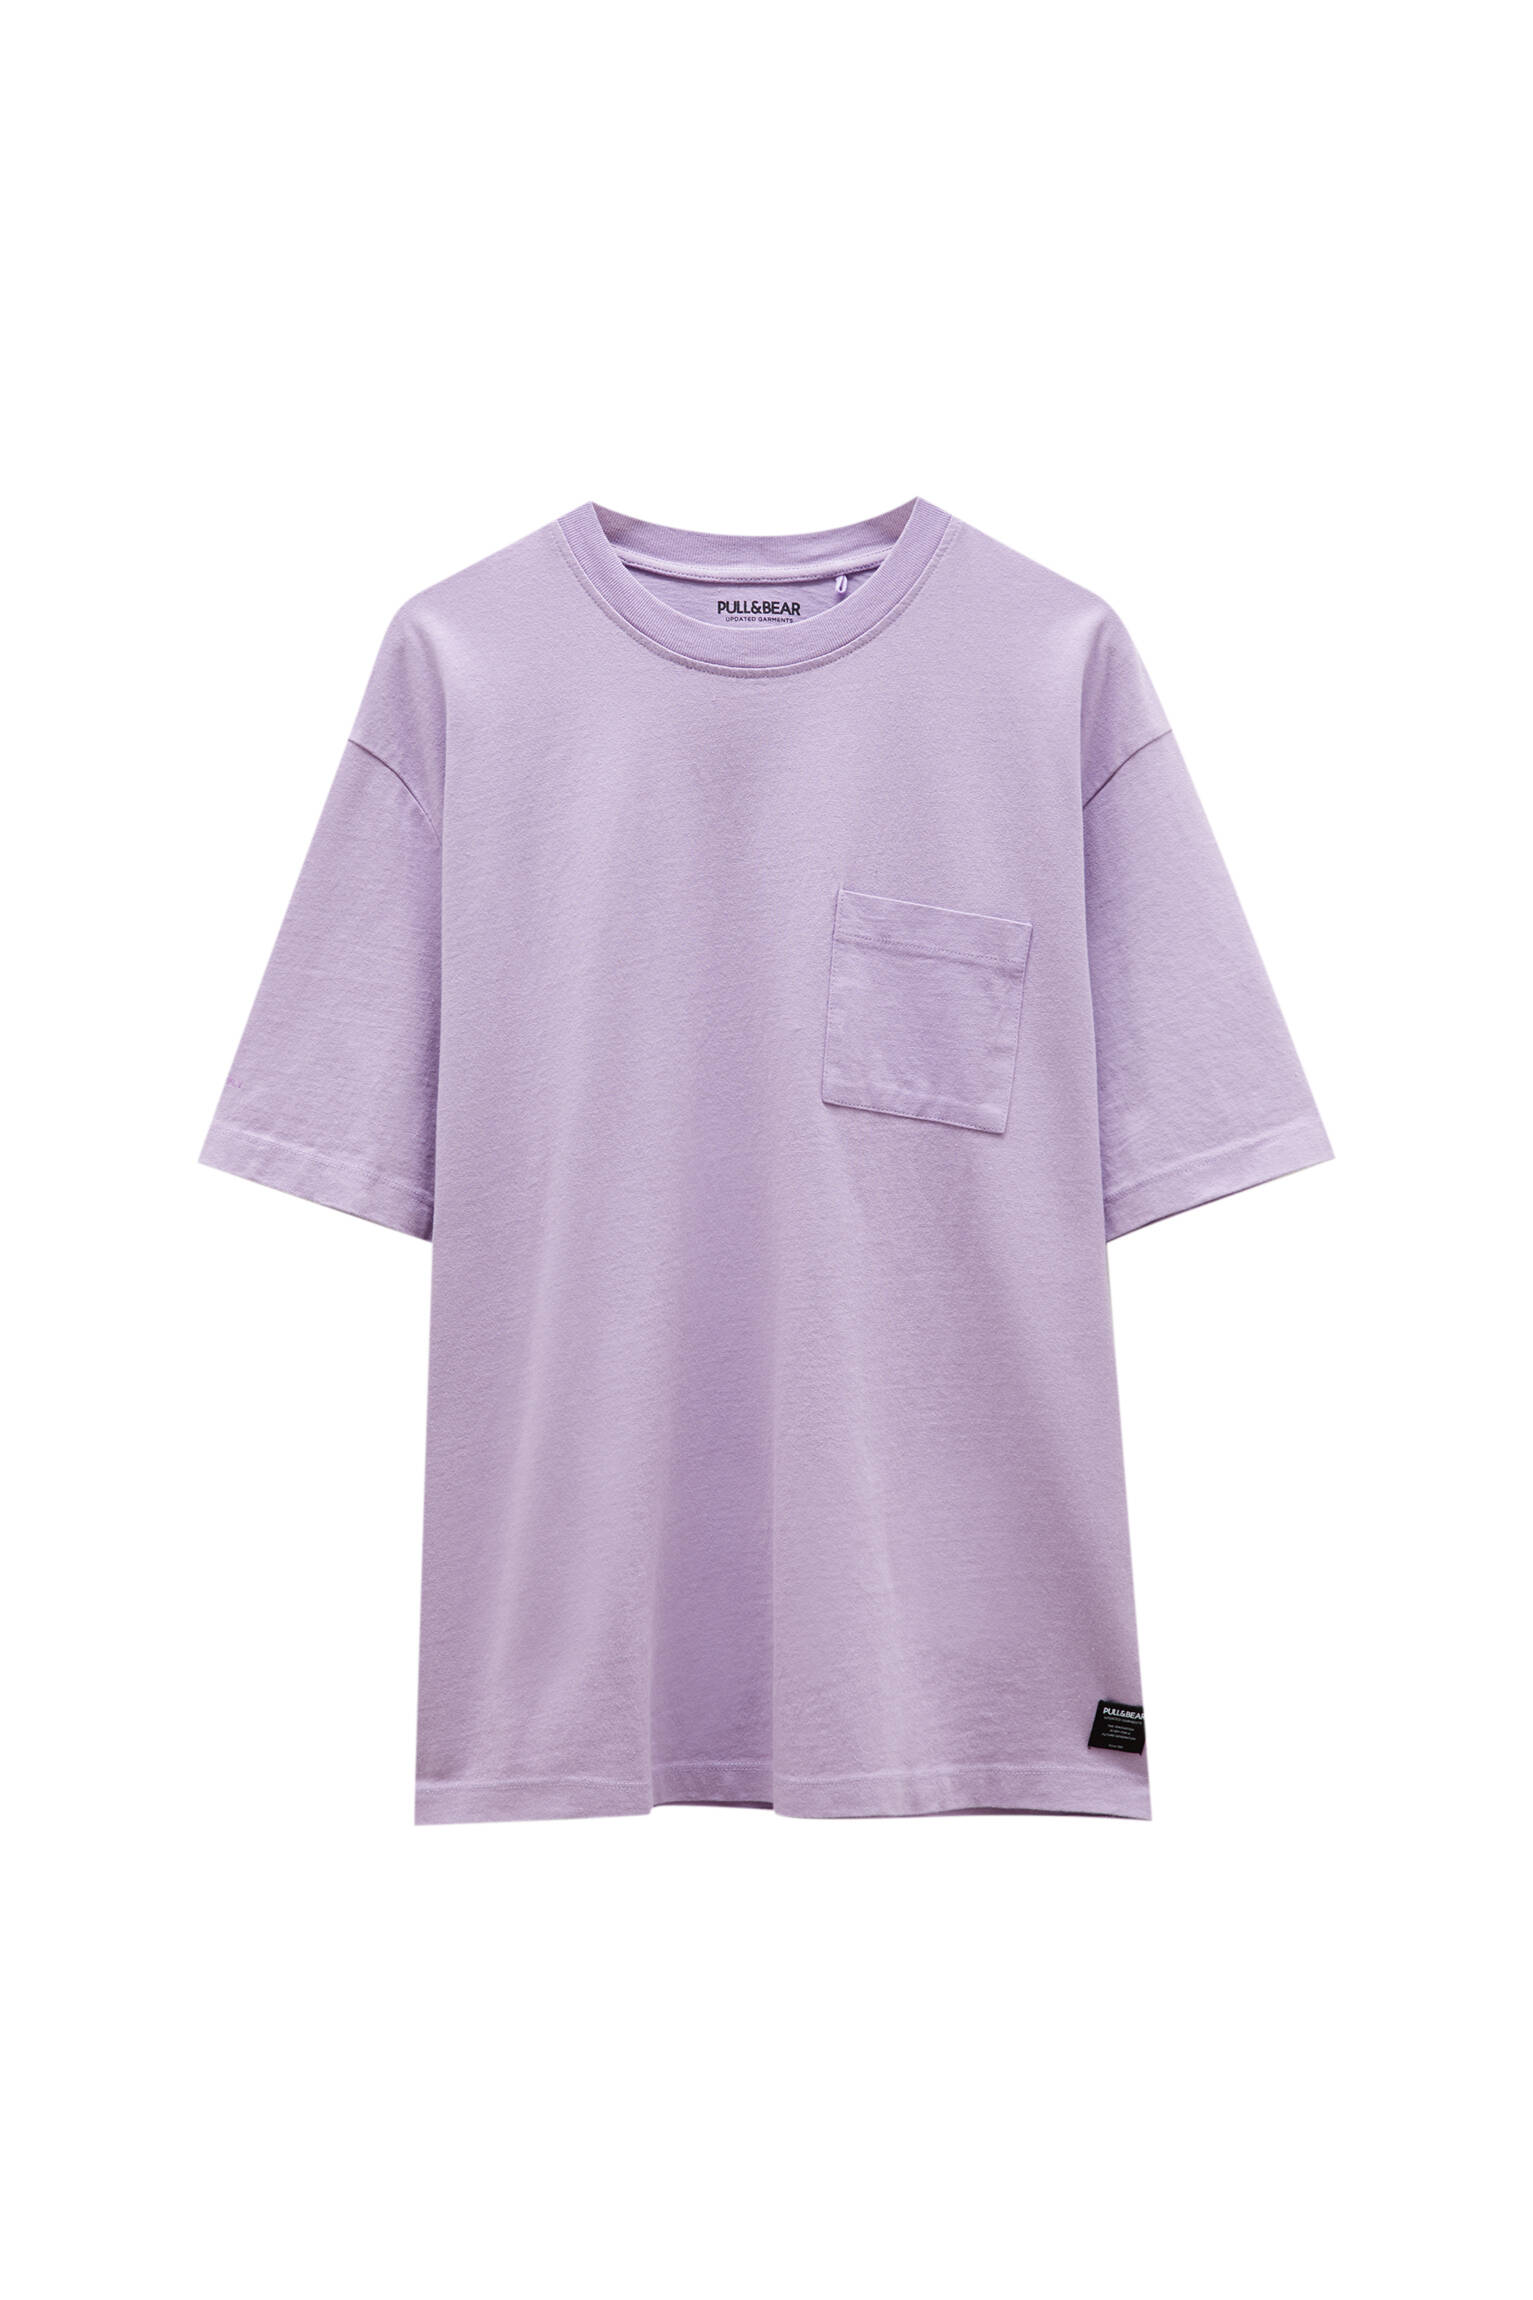 Pull&bear Homme T-shirt Basique Oversize En Coton Premium, à Manches Courtes Et Col Rond, Disponible En Plusieurs Couleurs. Rose DÉlavÉ Xs